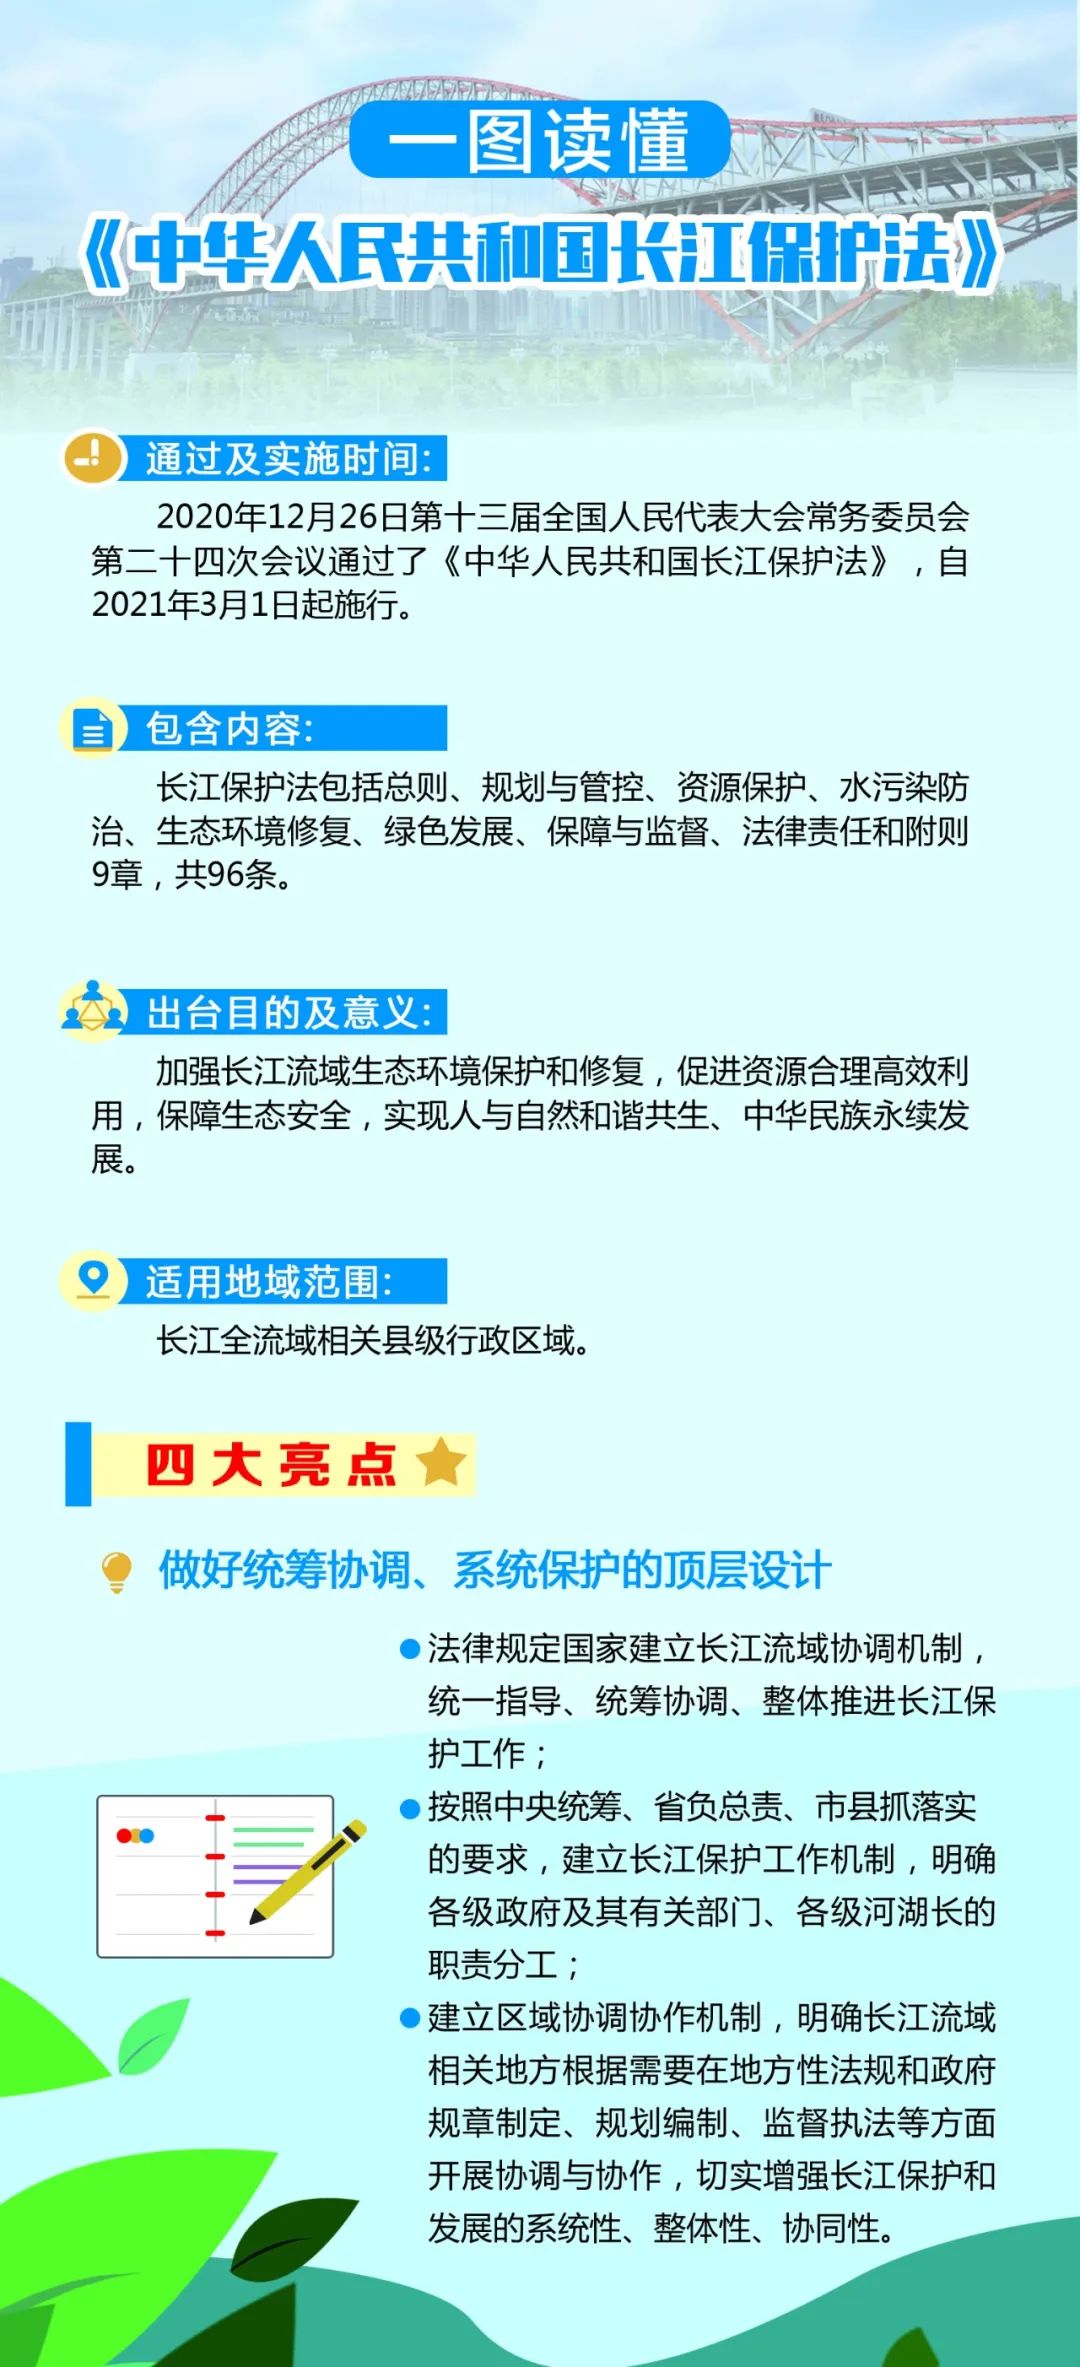 《长江保护法》宣传周 | 一图读懂长江保护法